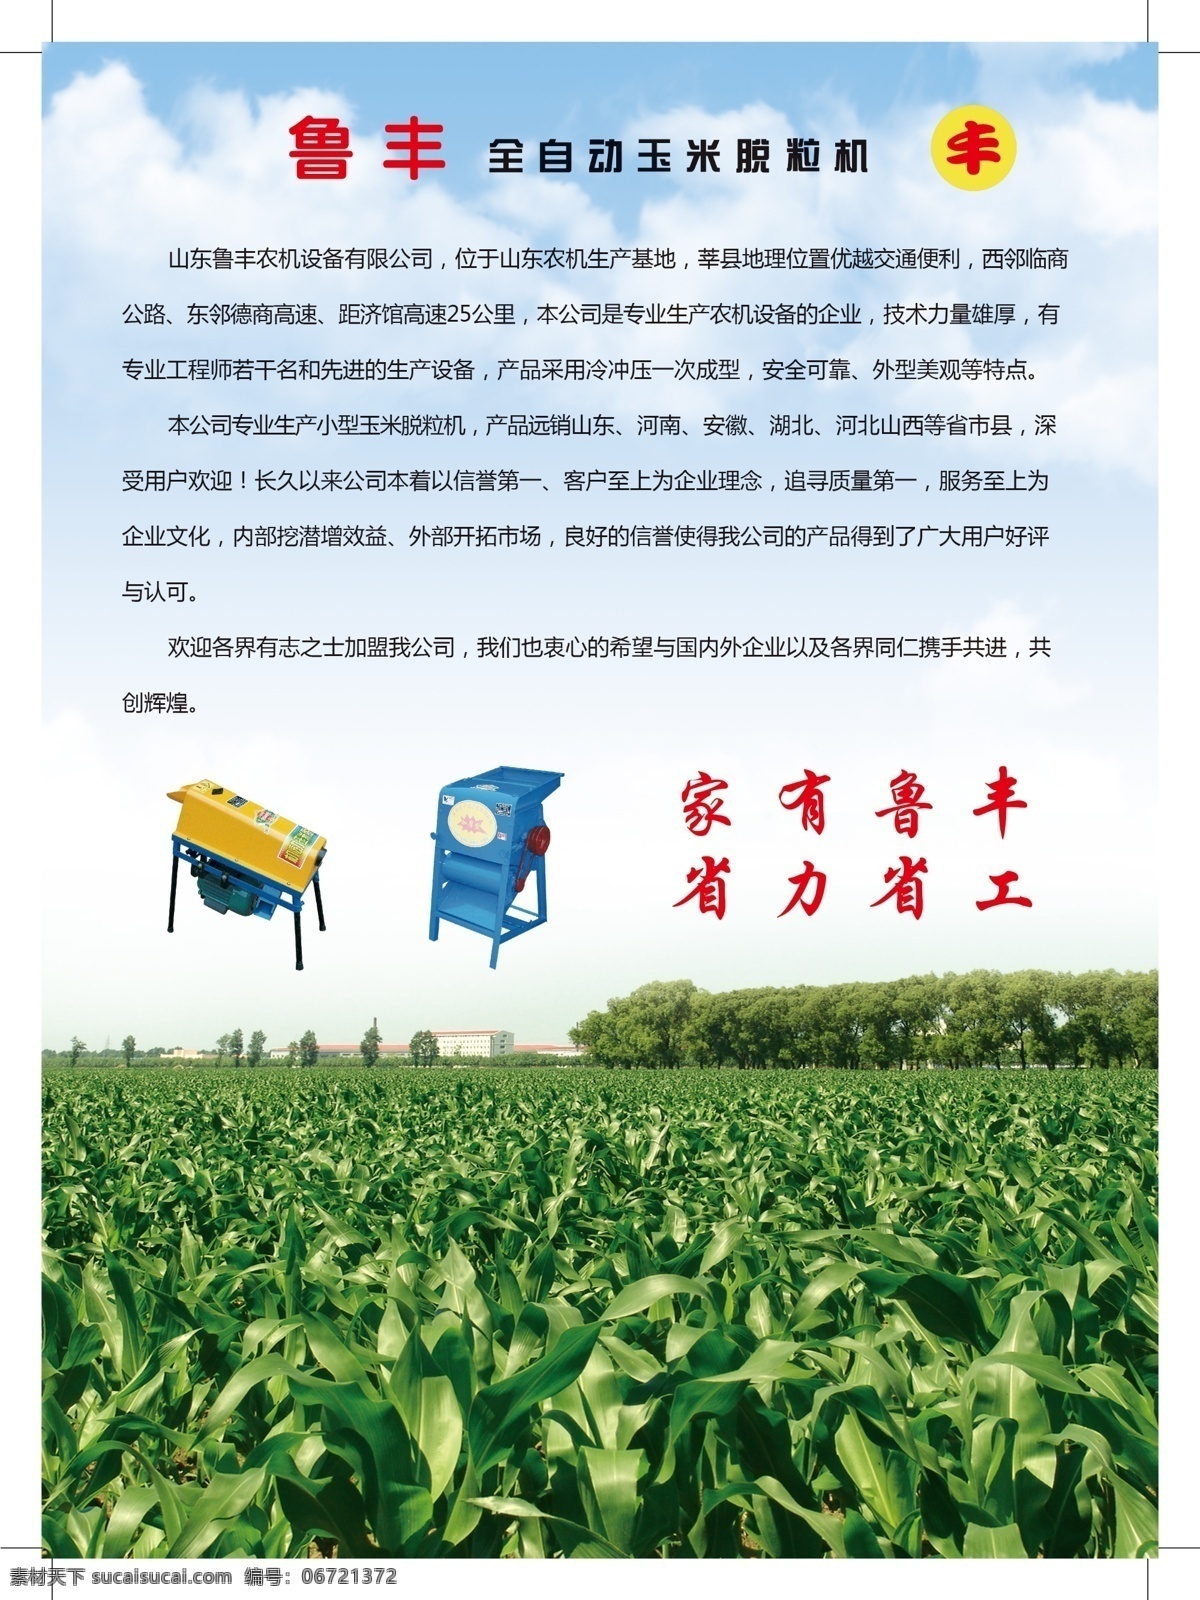 农机设备 彩页 鲁 丰 农机 设备 有限公司 玉米田 dm宣传单 广告设计模板 源文件